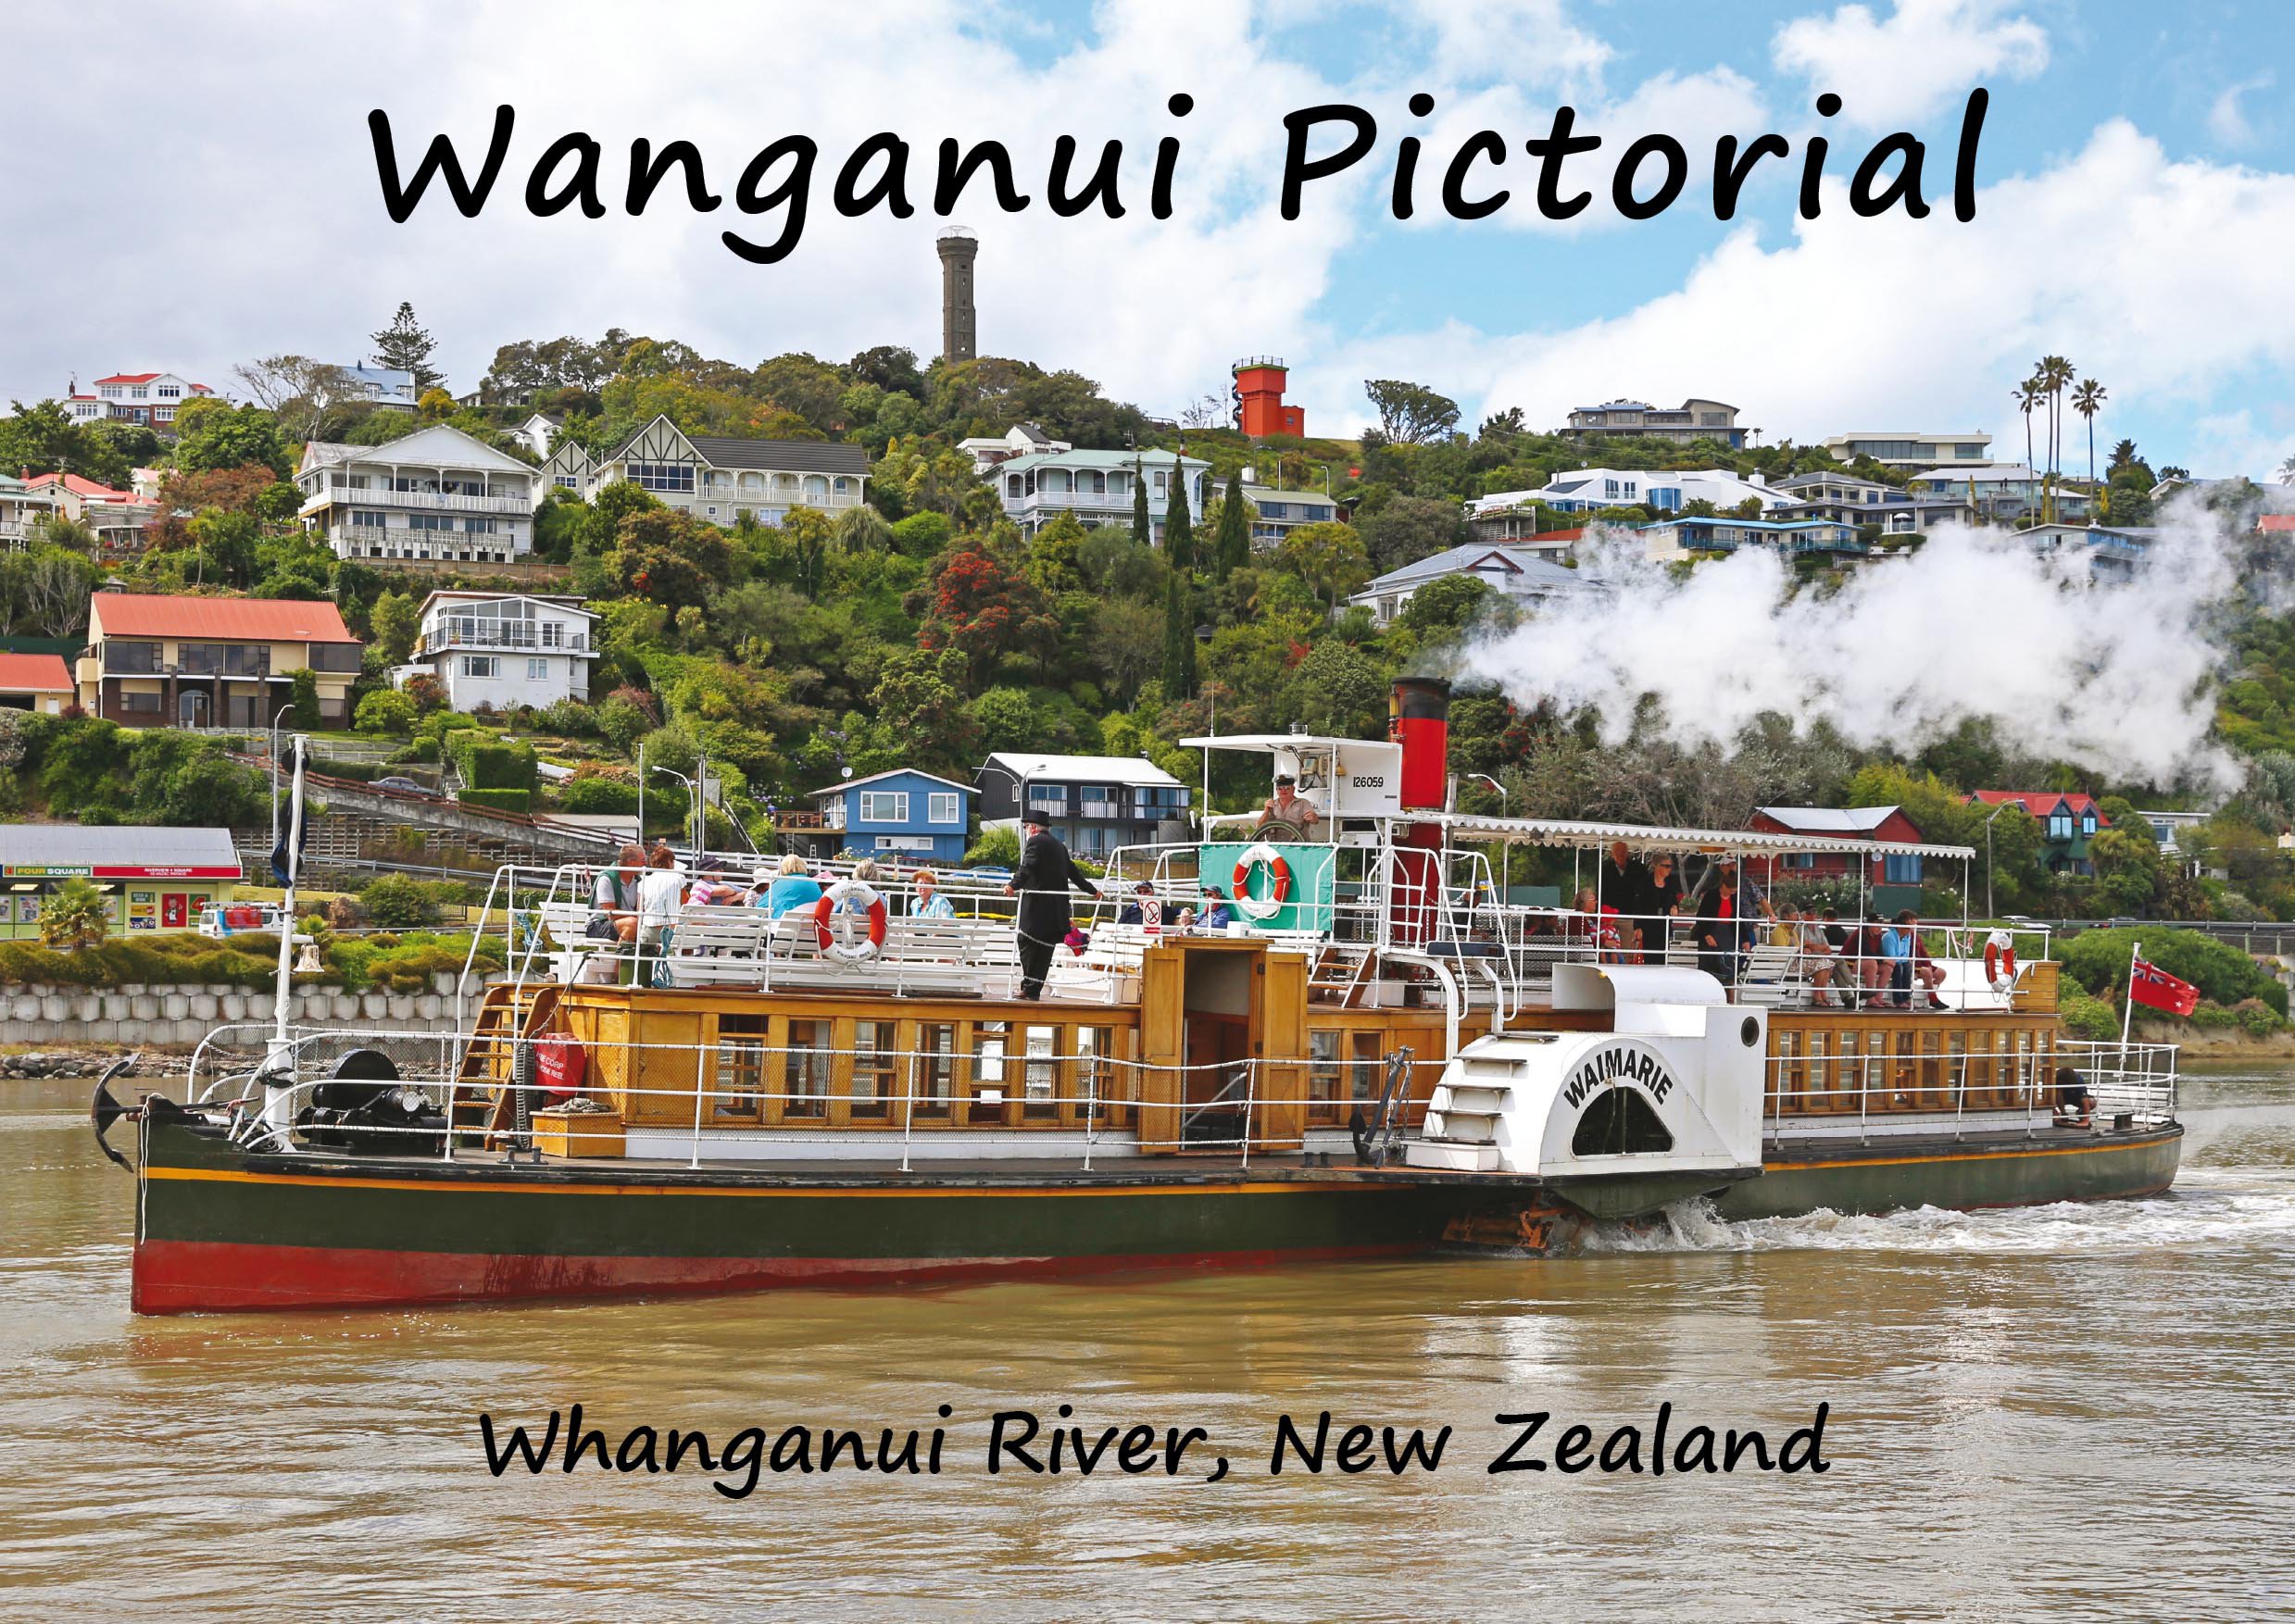 Whanganui Pictorial